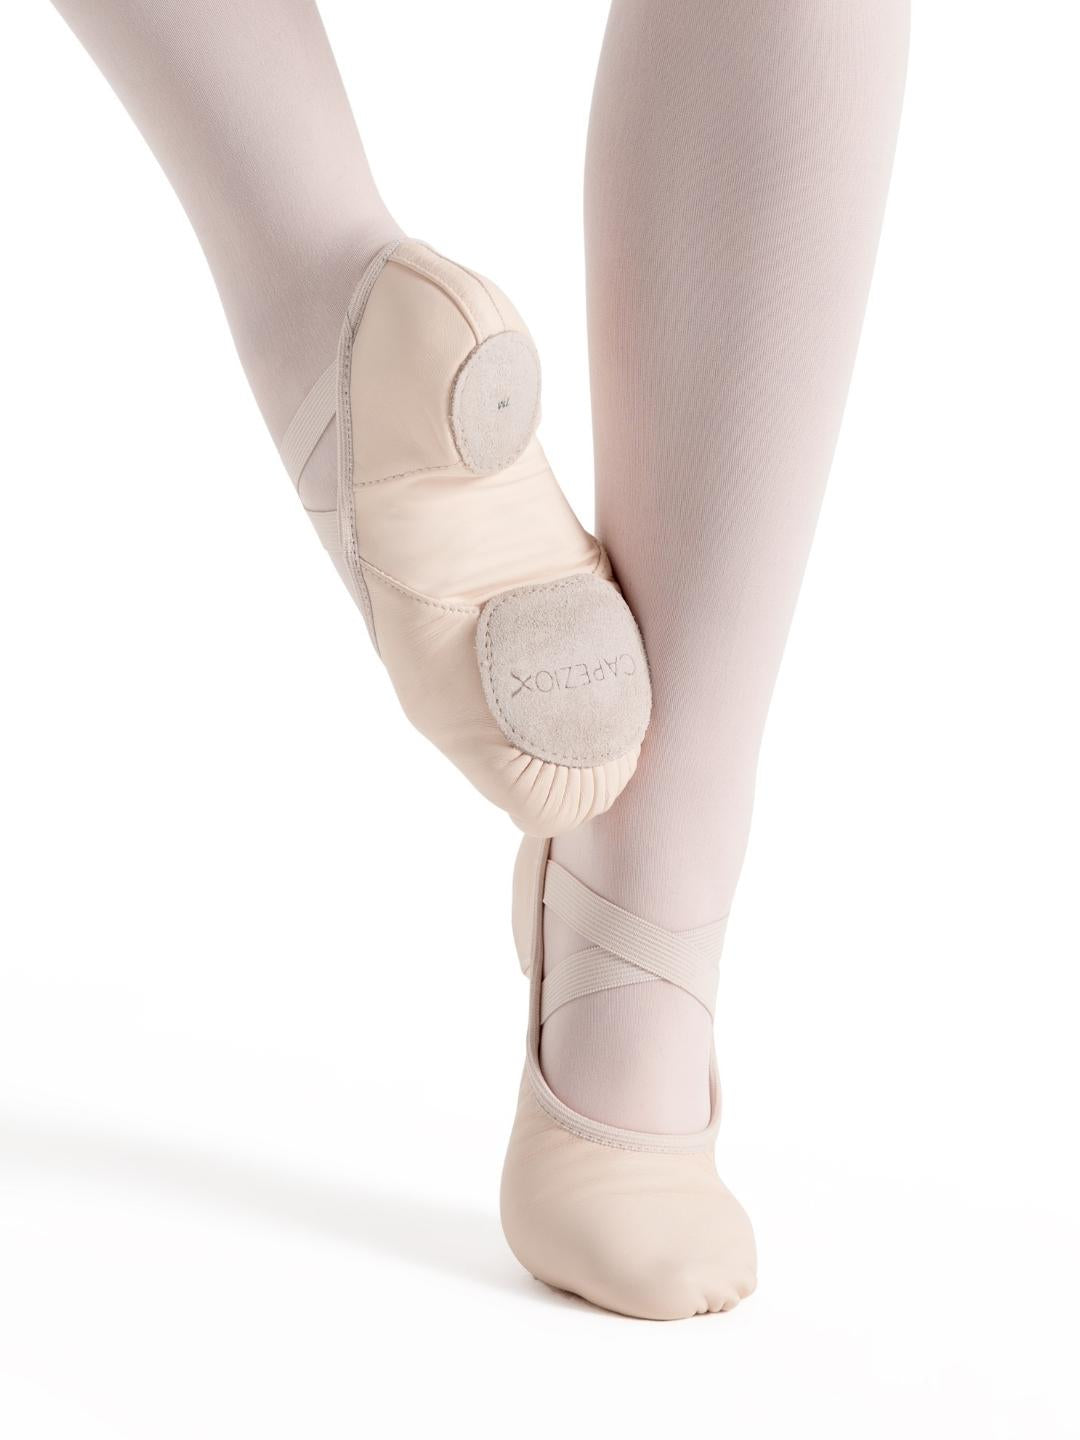 Capezio Hanami Leather Split Sole Ballet Shoe Childrens 2038C